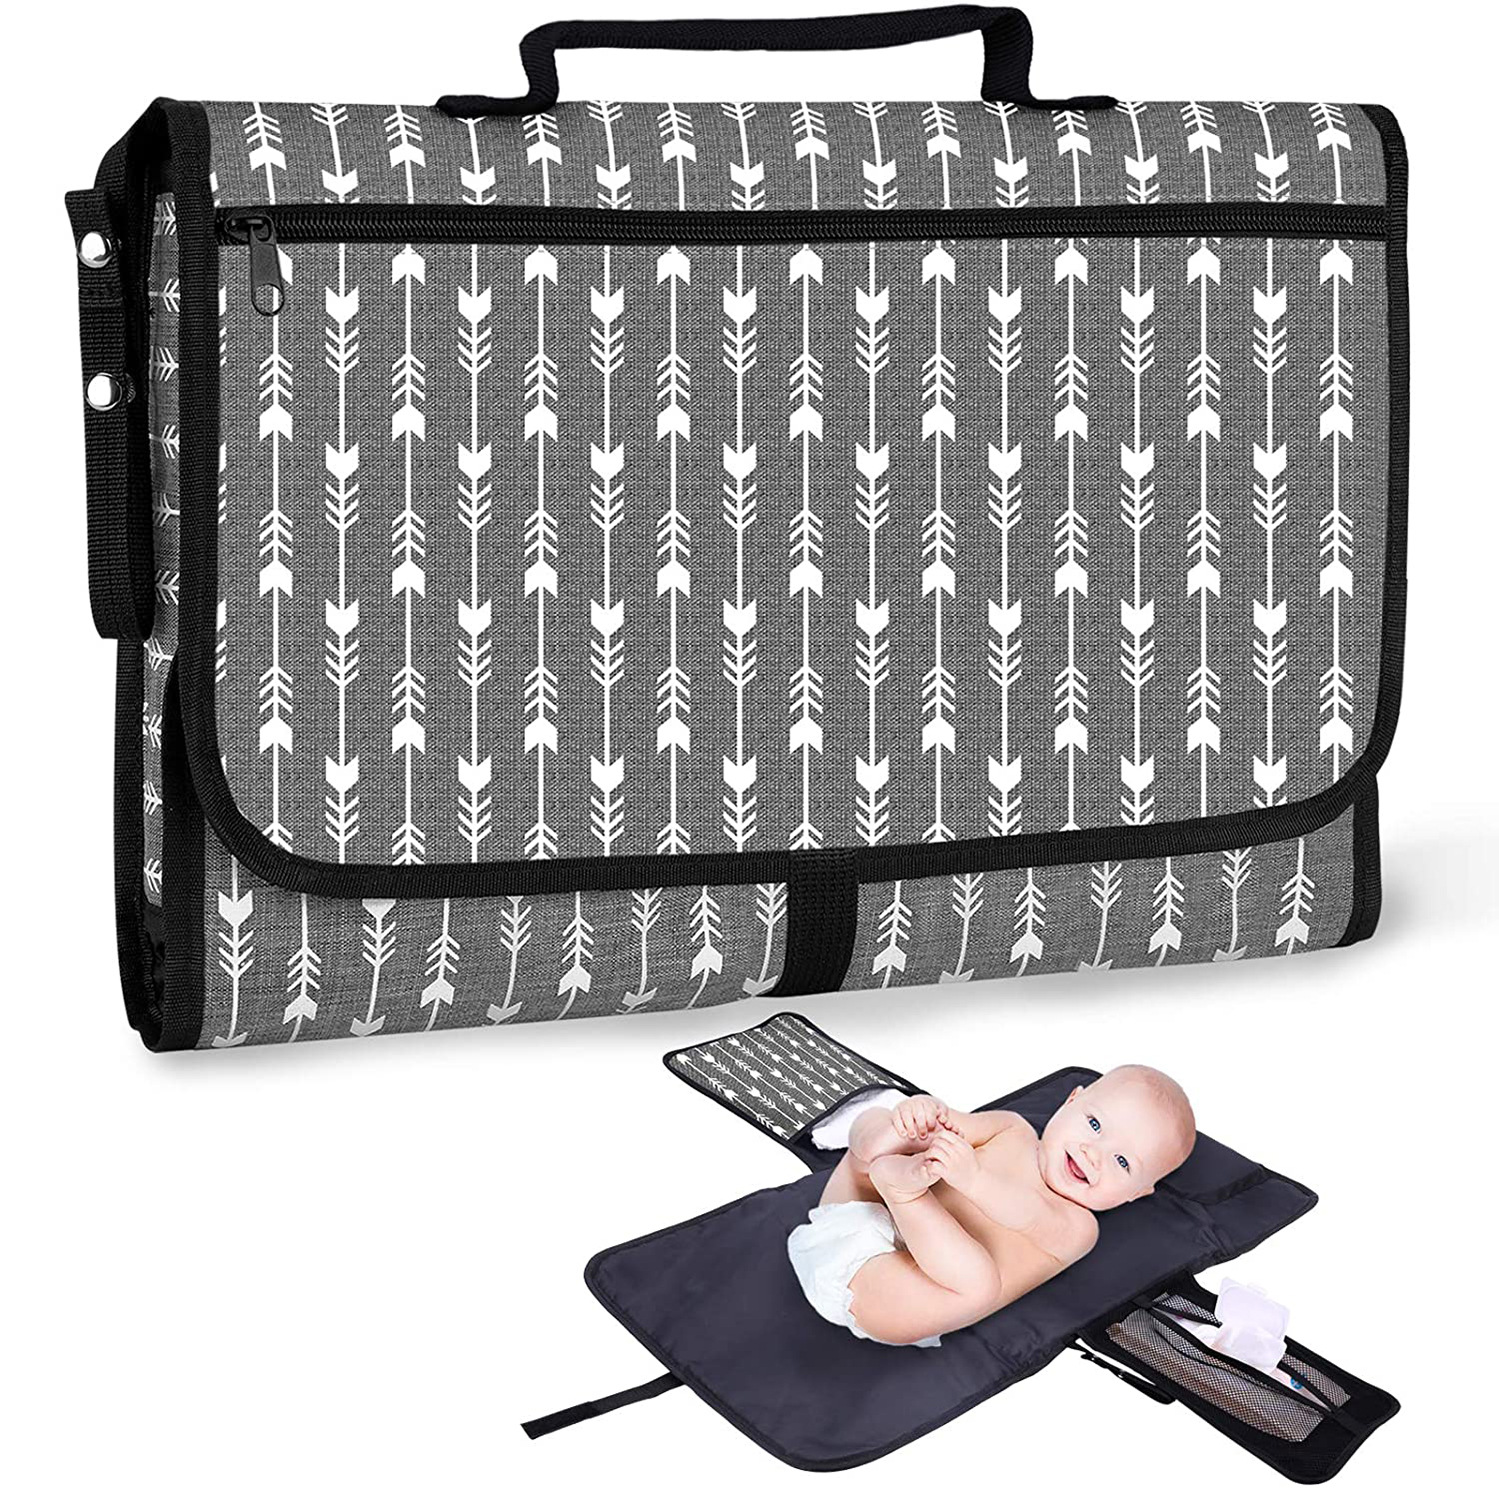 婴儿尿垫 婴儿旅行尿布更换垫 防水尿布垫 便携可折叠婴儿尿布包